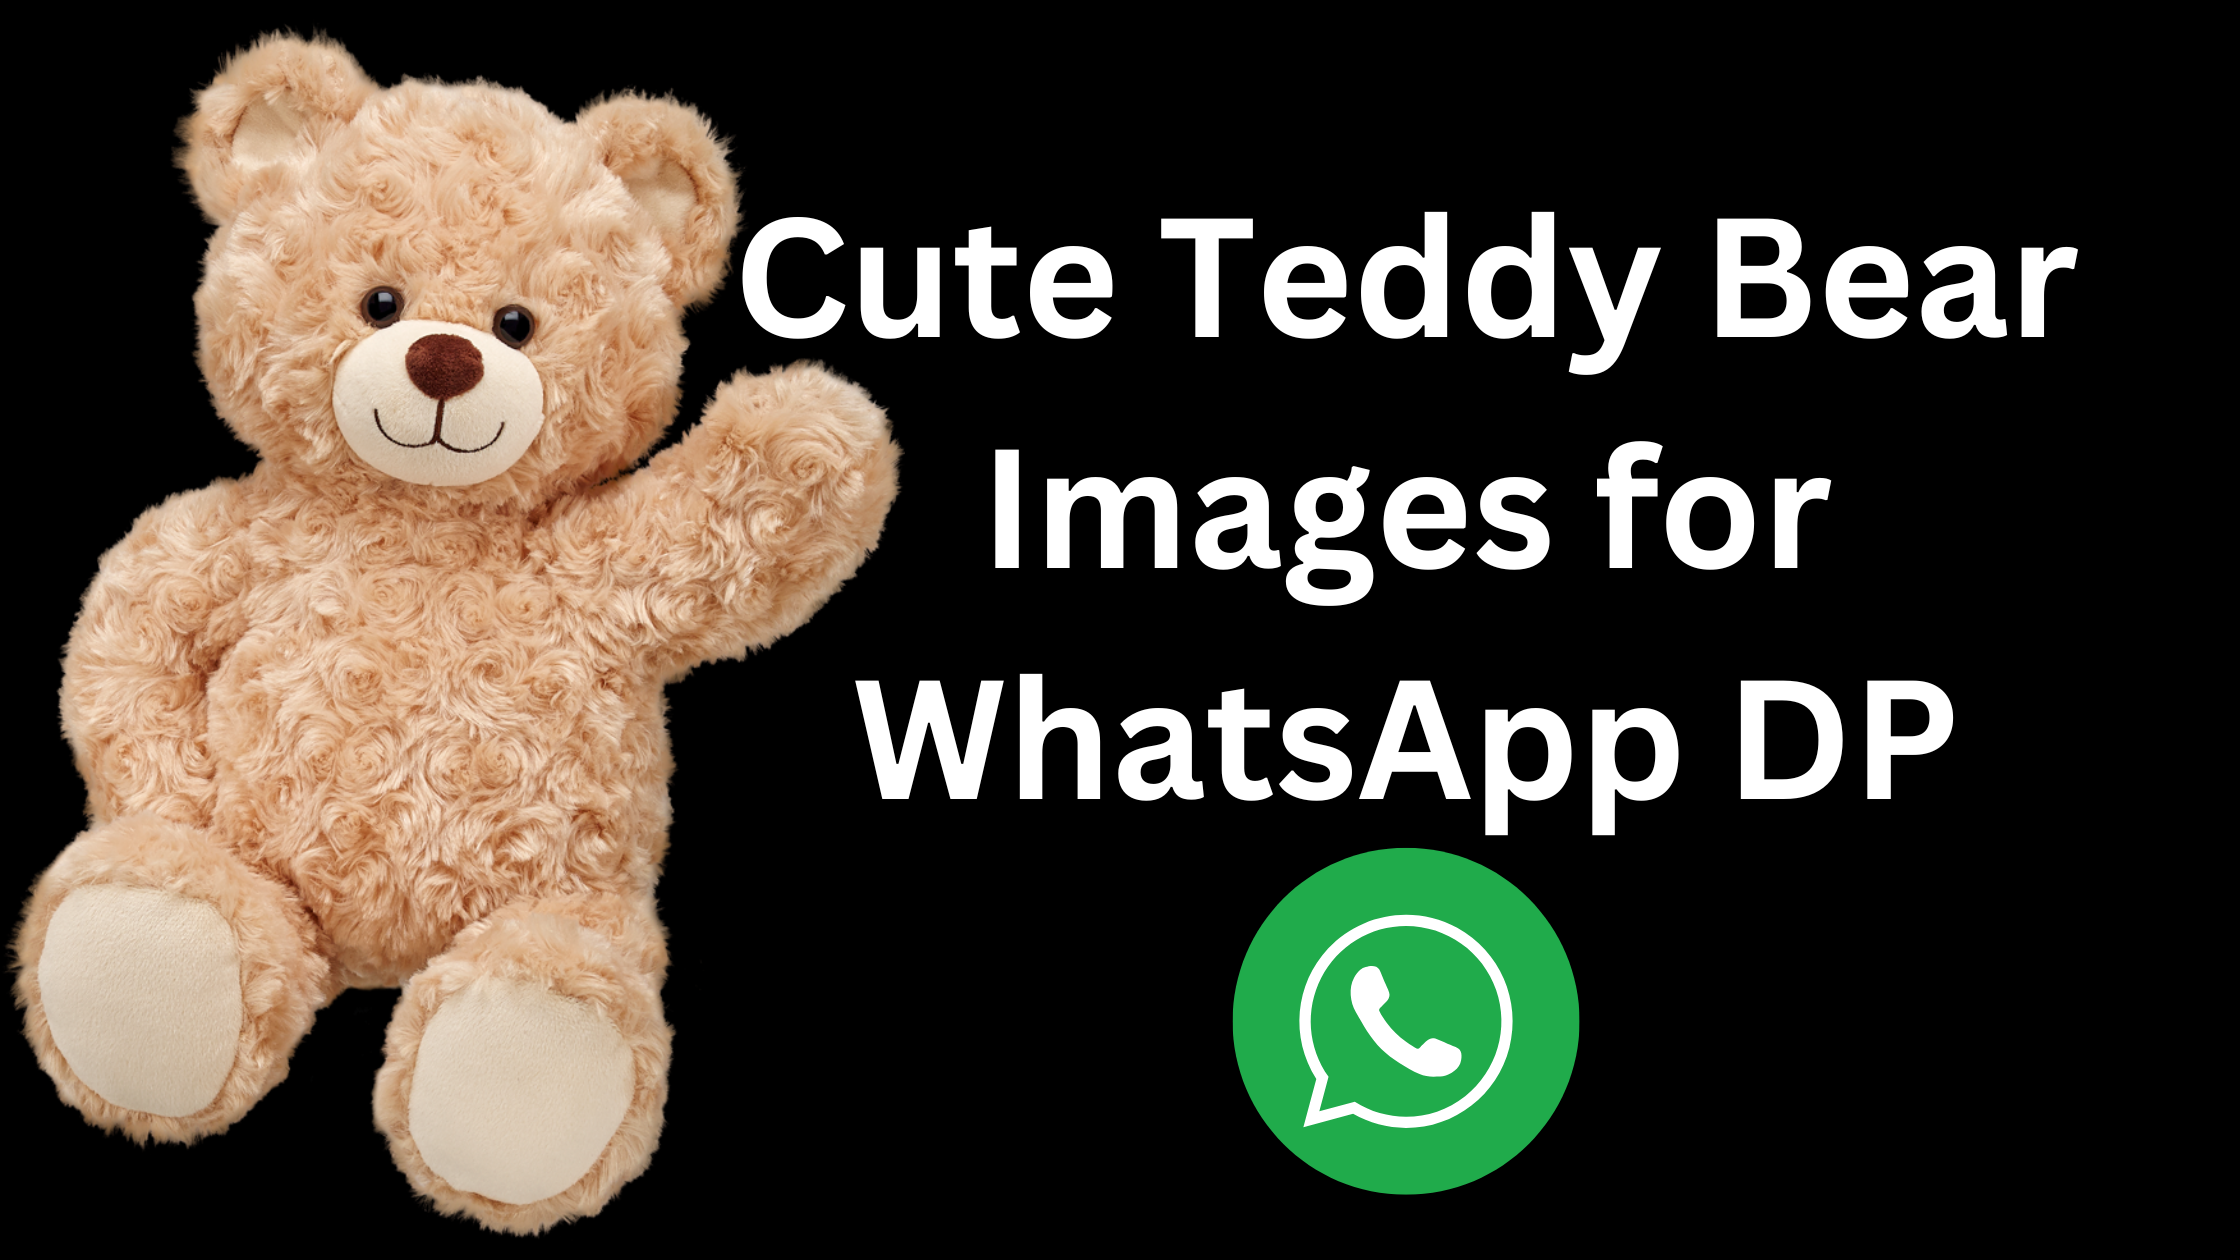 Cute Teddy Bear Images for WhatsApp DP